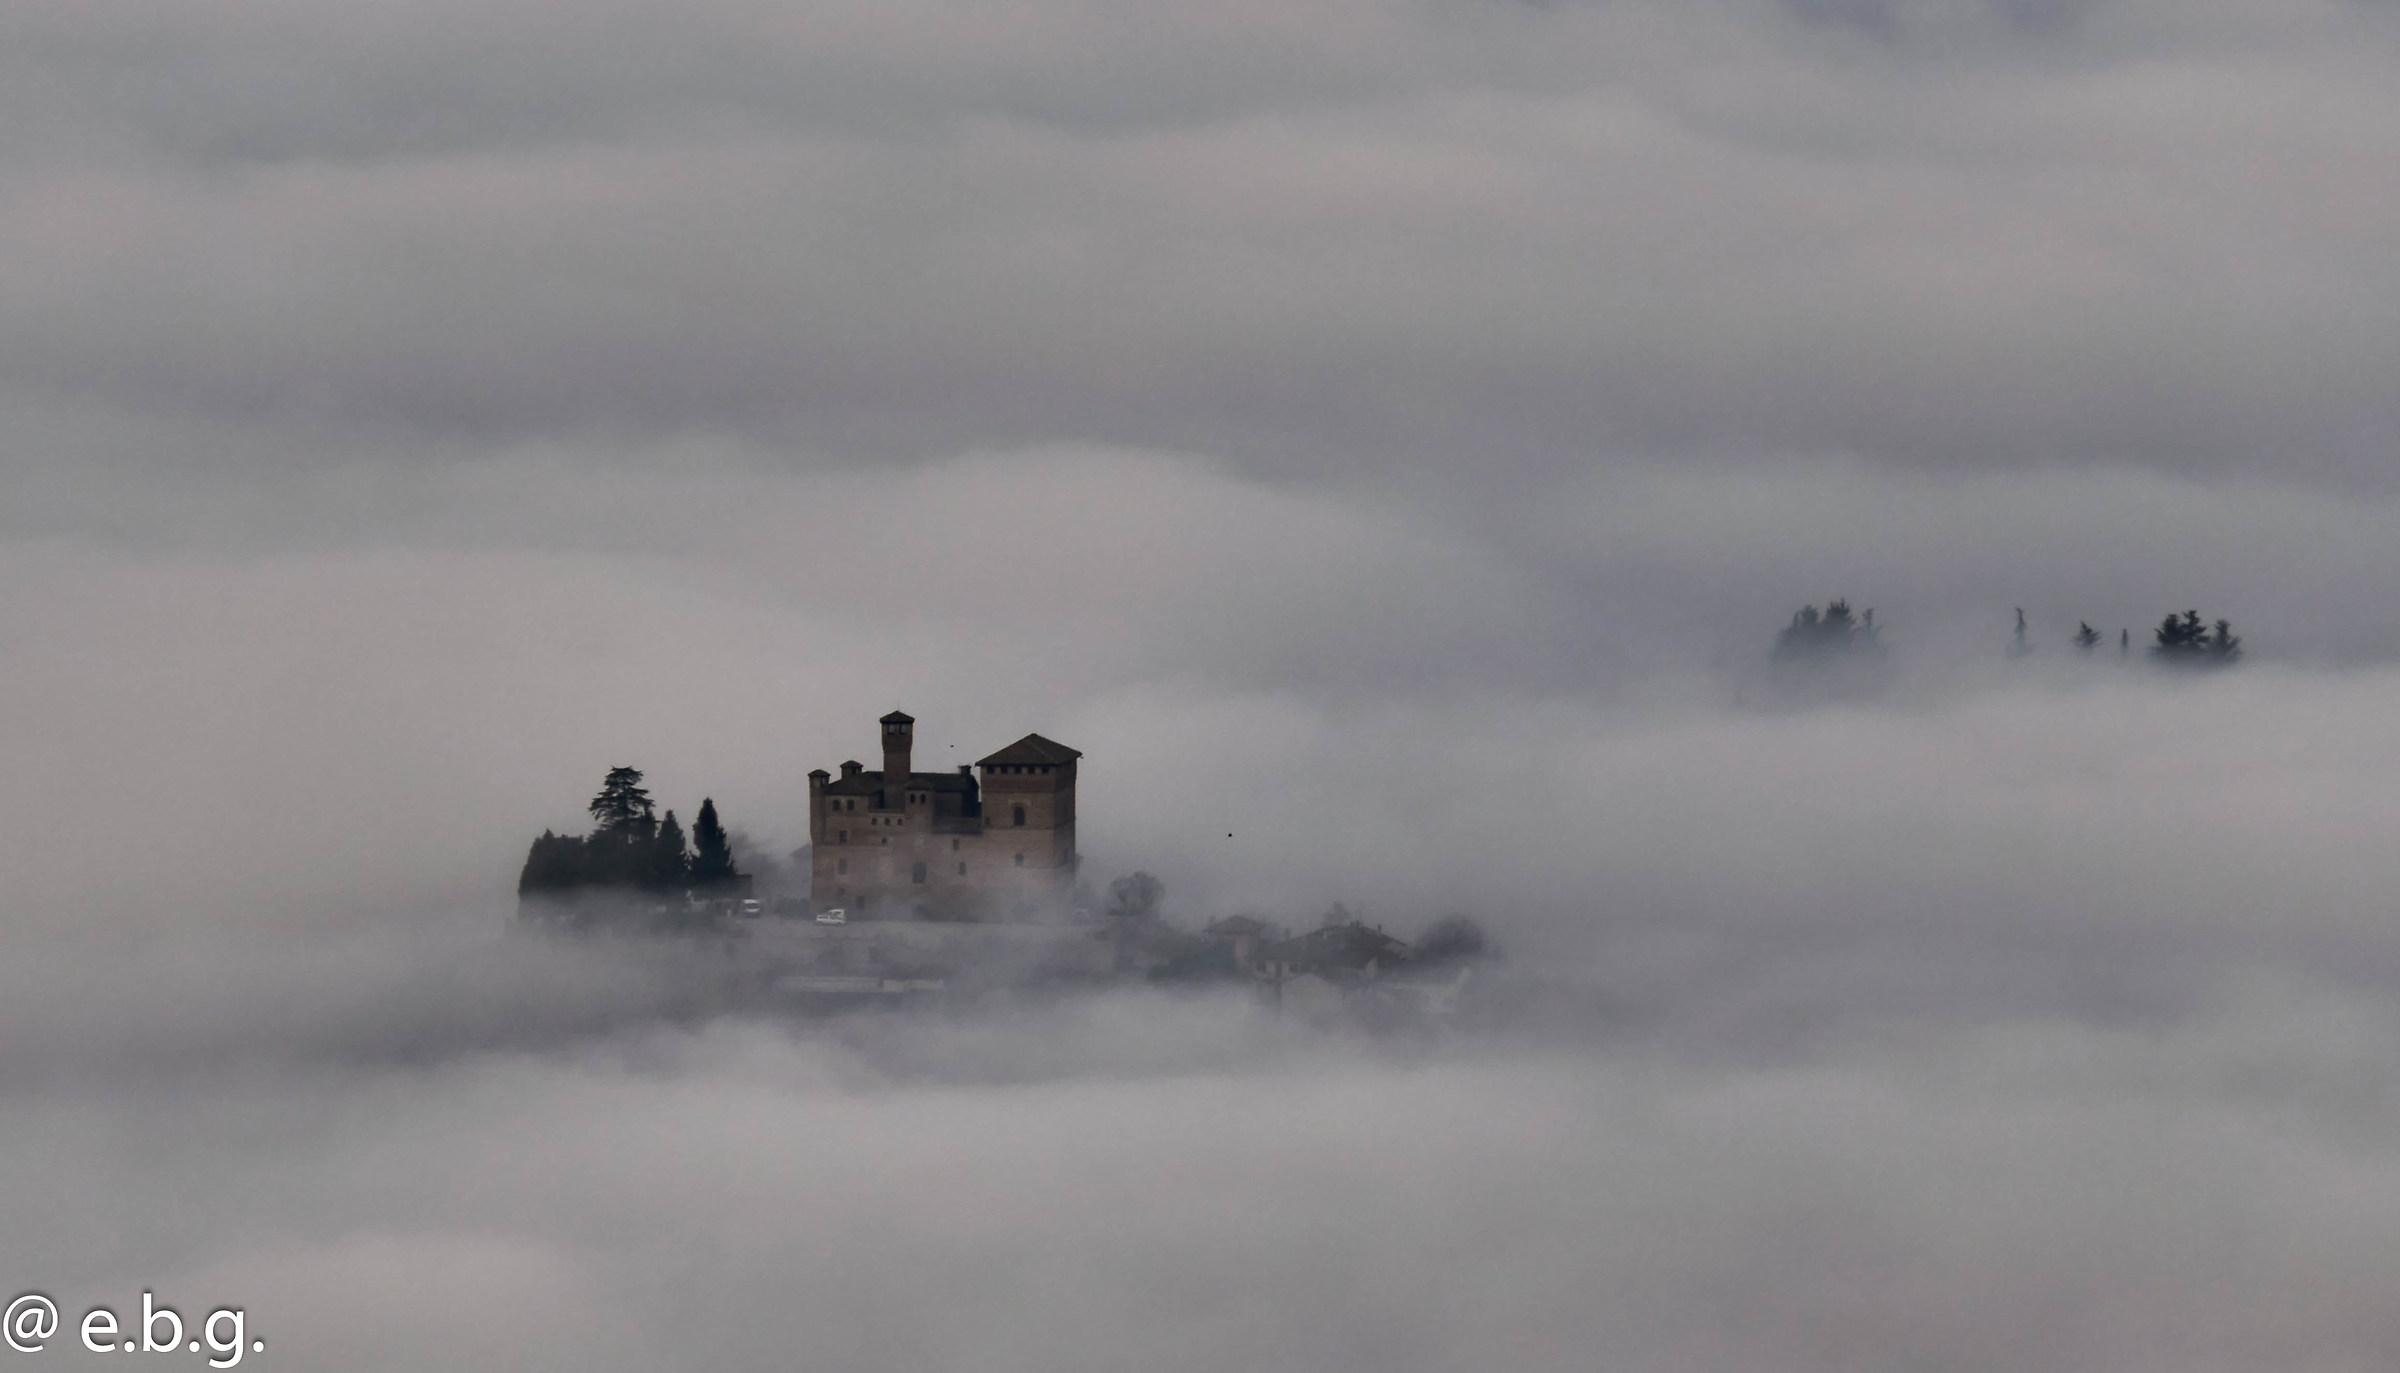 Il castello di Grinzane Cavour...